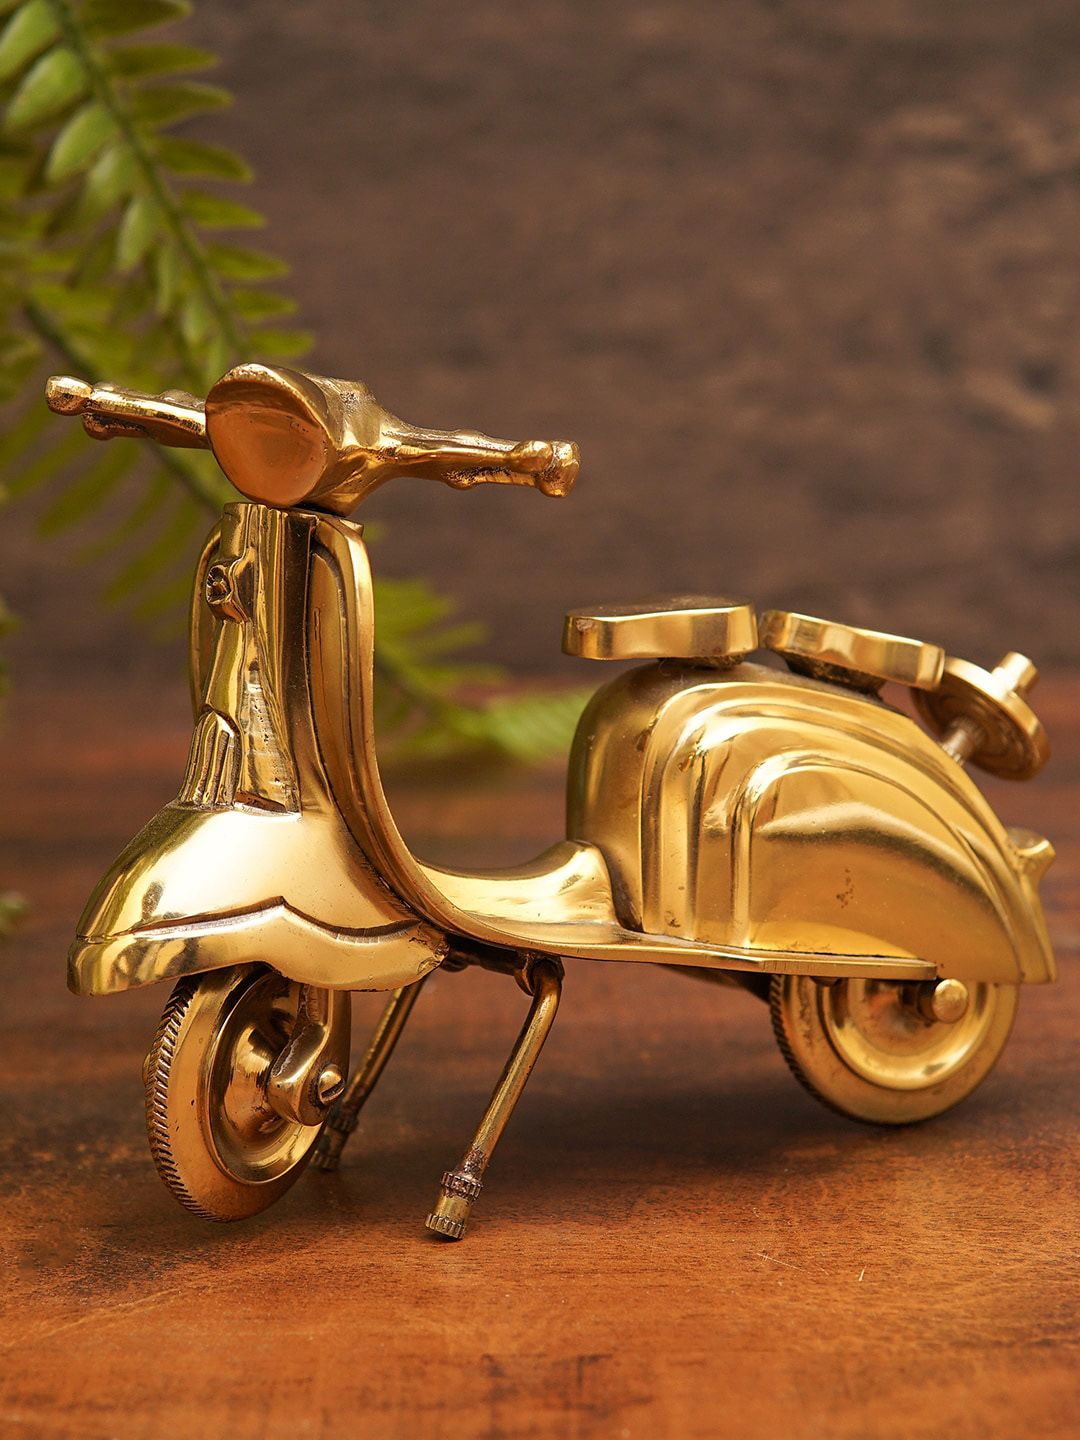 StatueStudio Gold-Toned Mini Scooter Showpiece Price in India